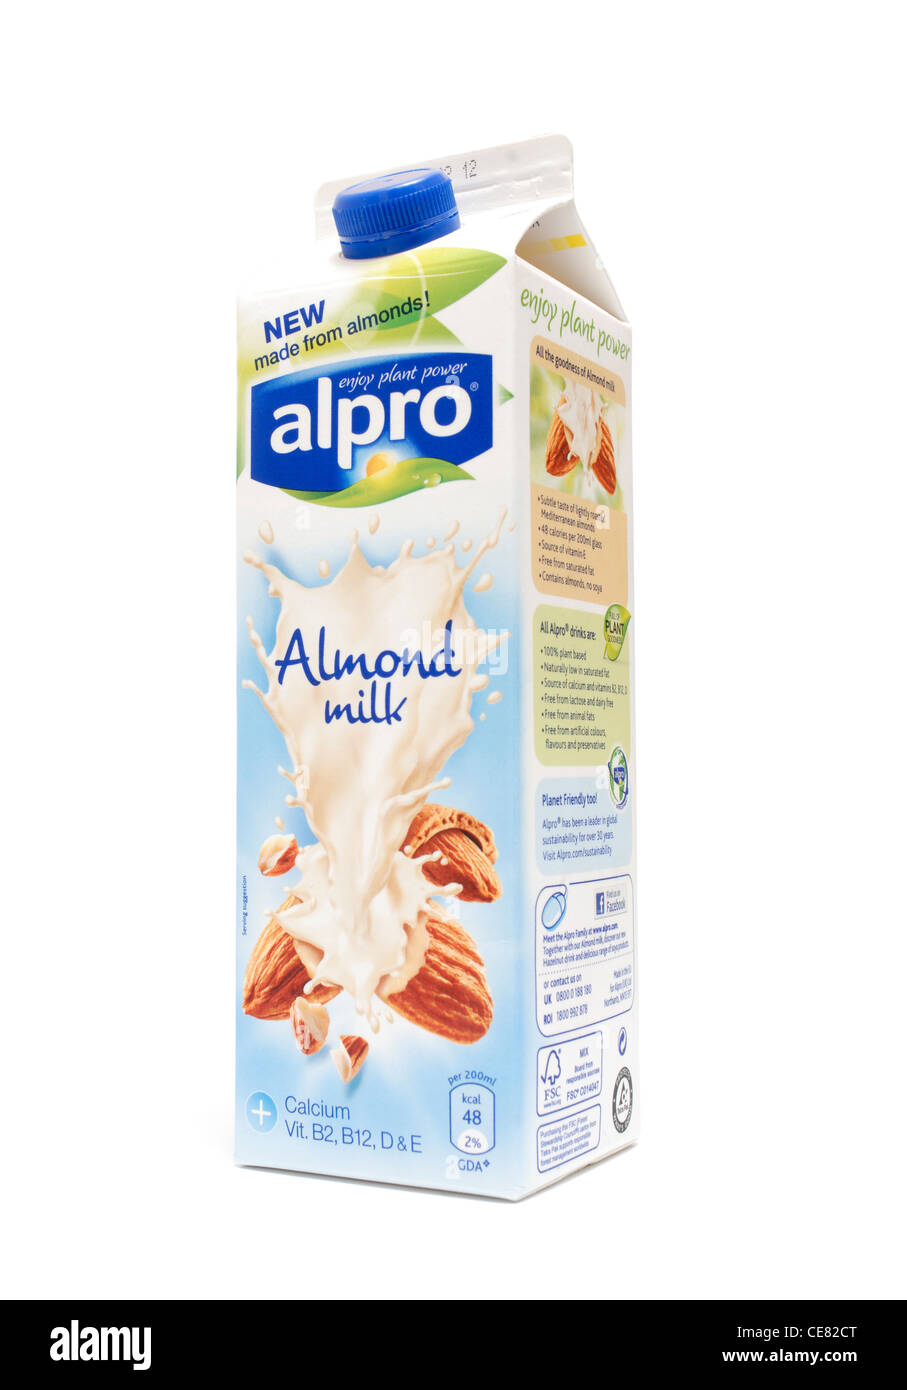 Alpro milk -Fotos und -Bildmaterial in hoher Auflösung – Alamy